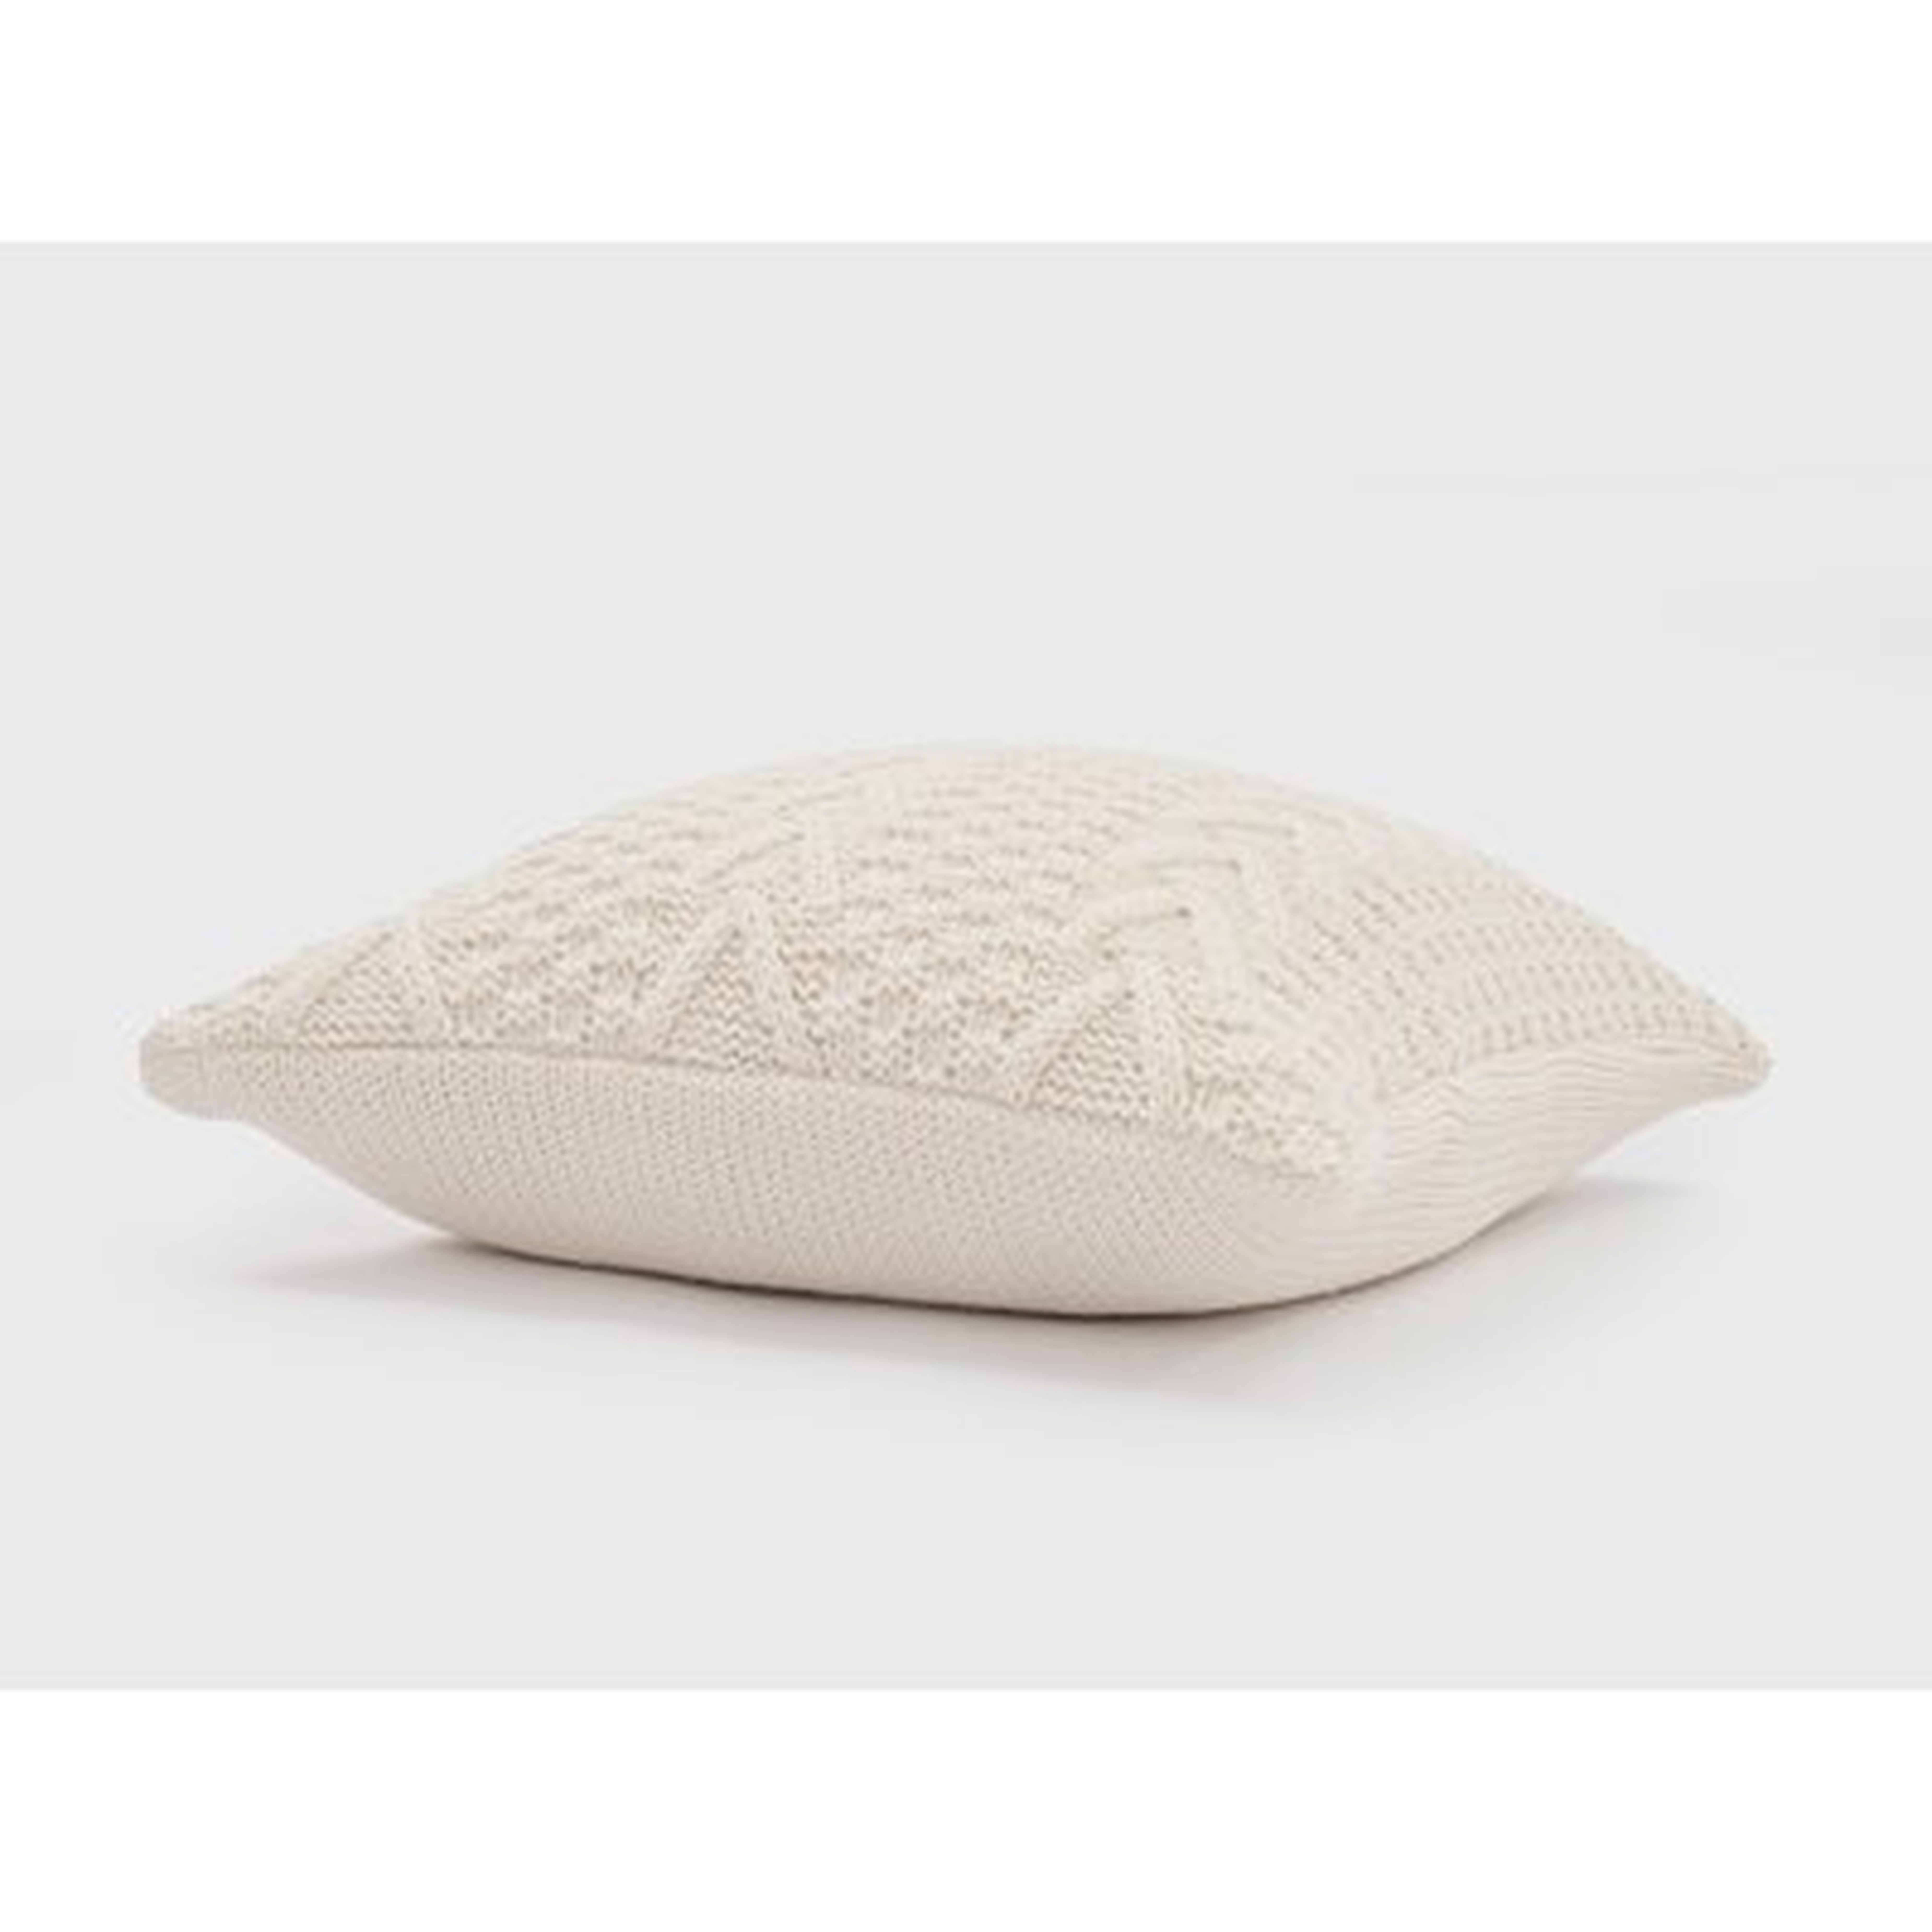 Ratree Chunky Sweater Knit Pillow - Wayfair